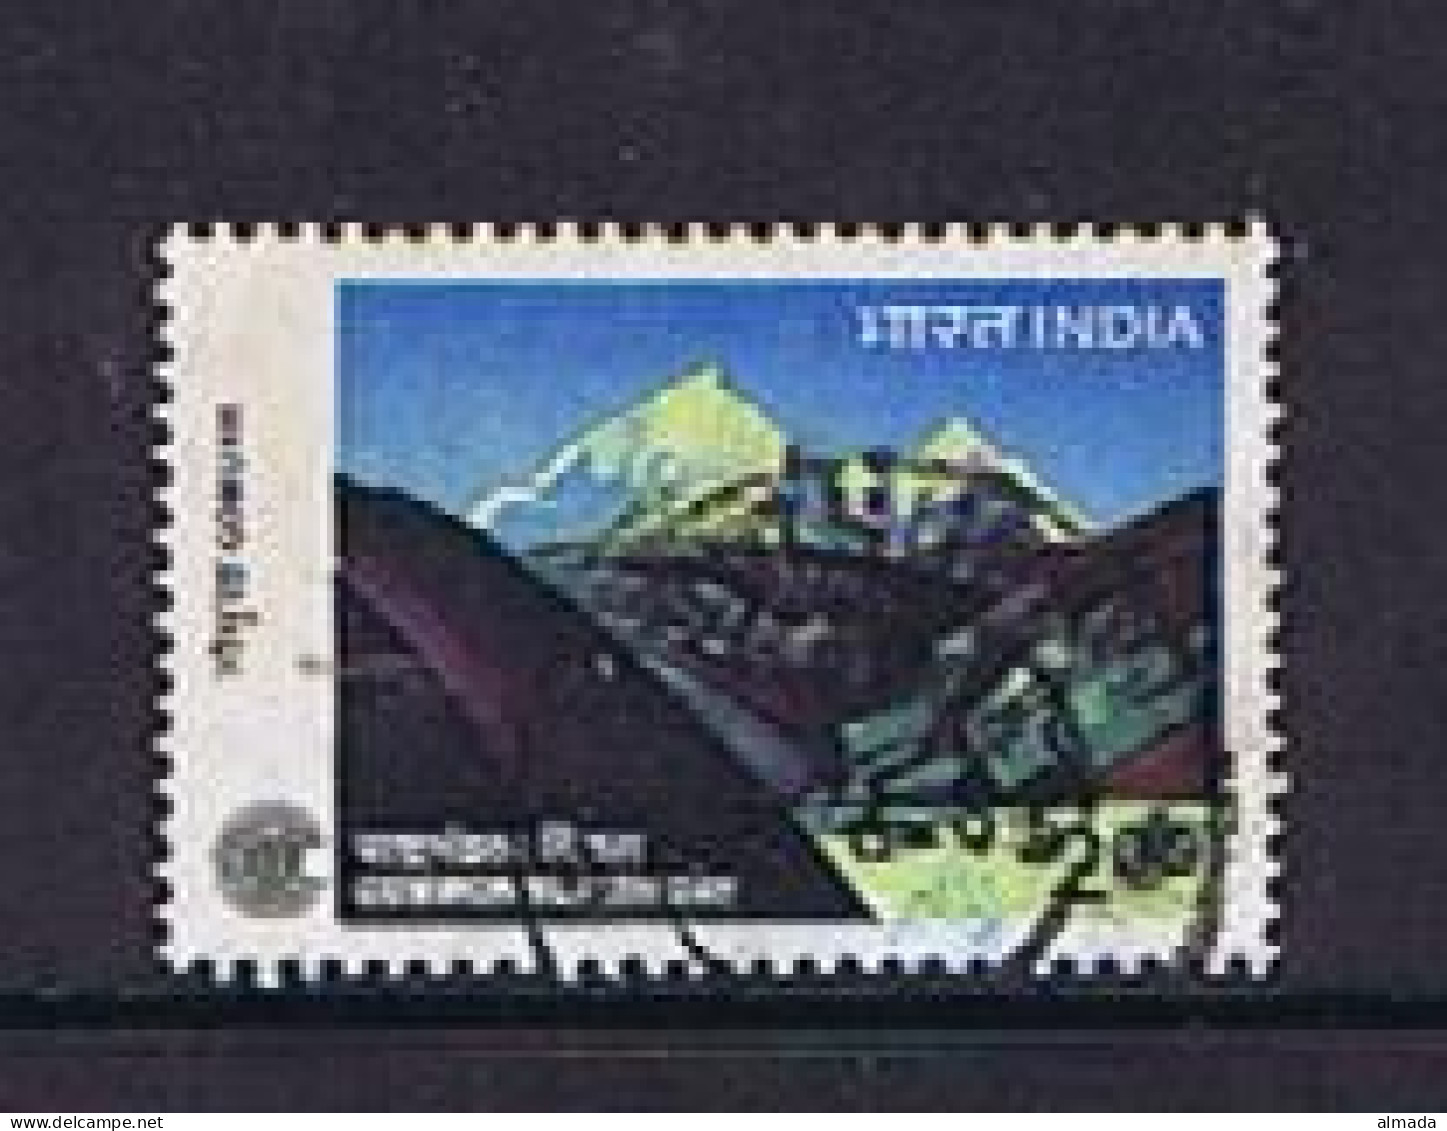 India 1983: Michel 947 Used, Gestempelt - Usati